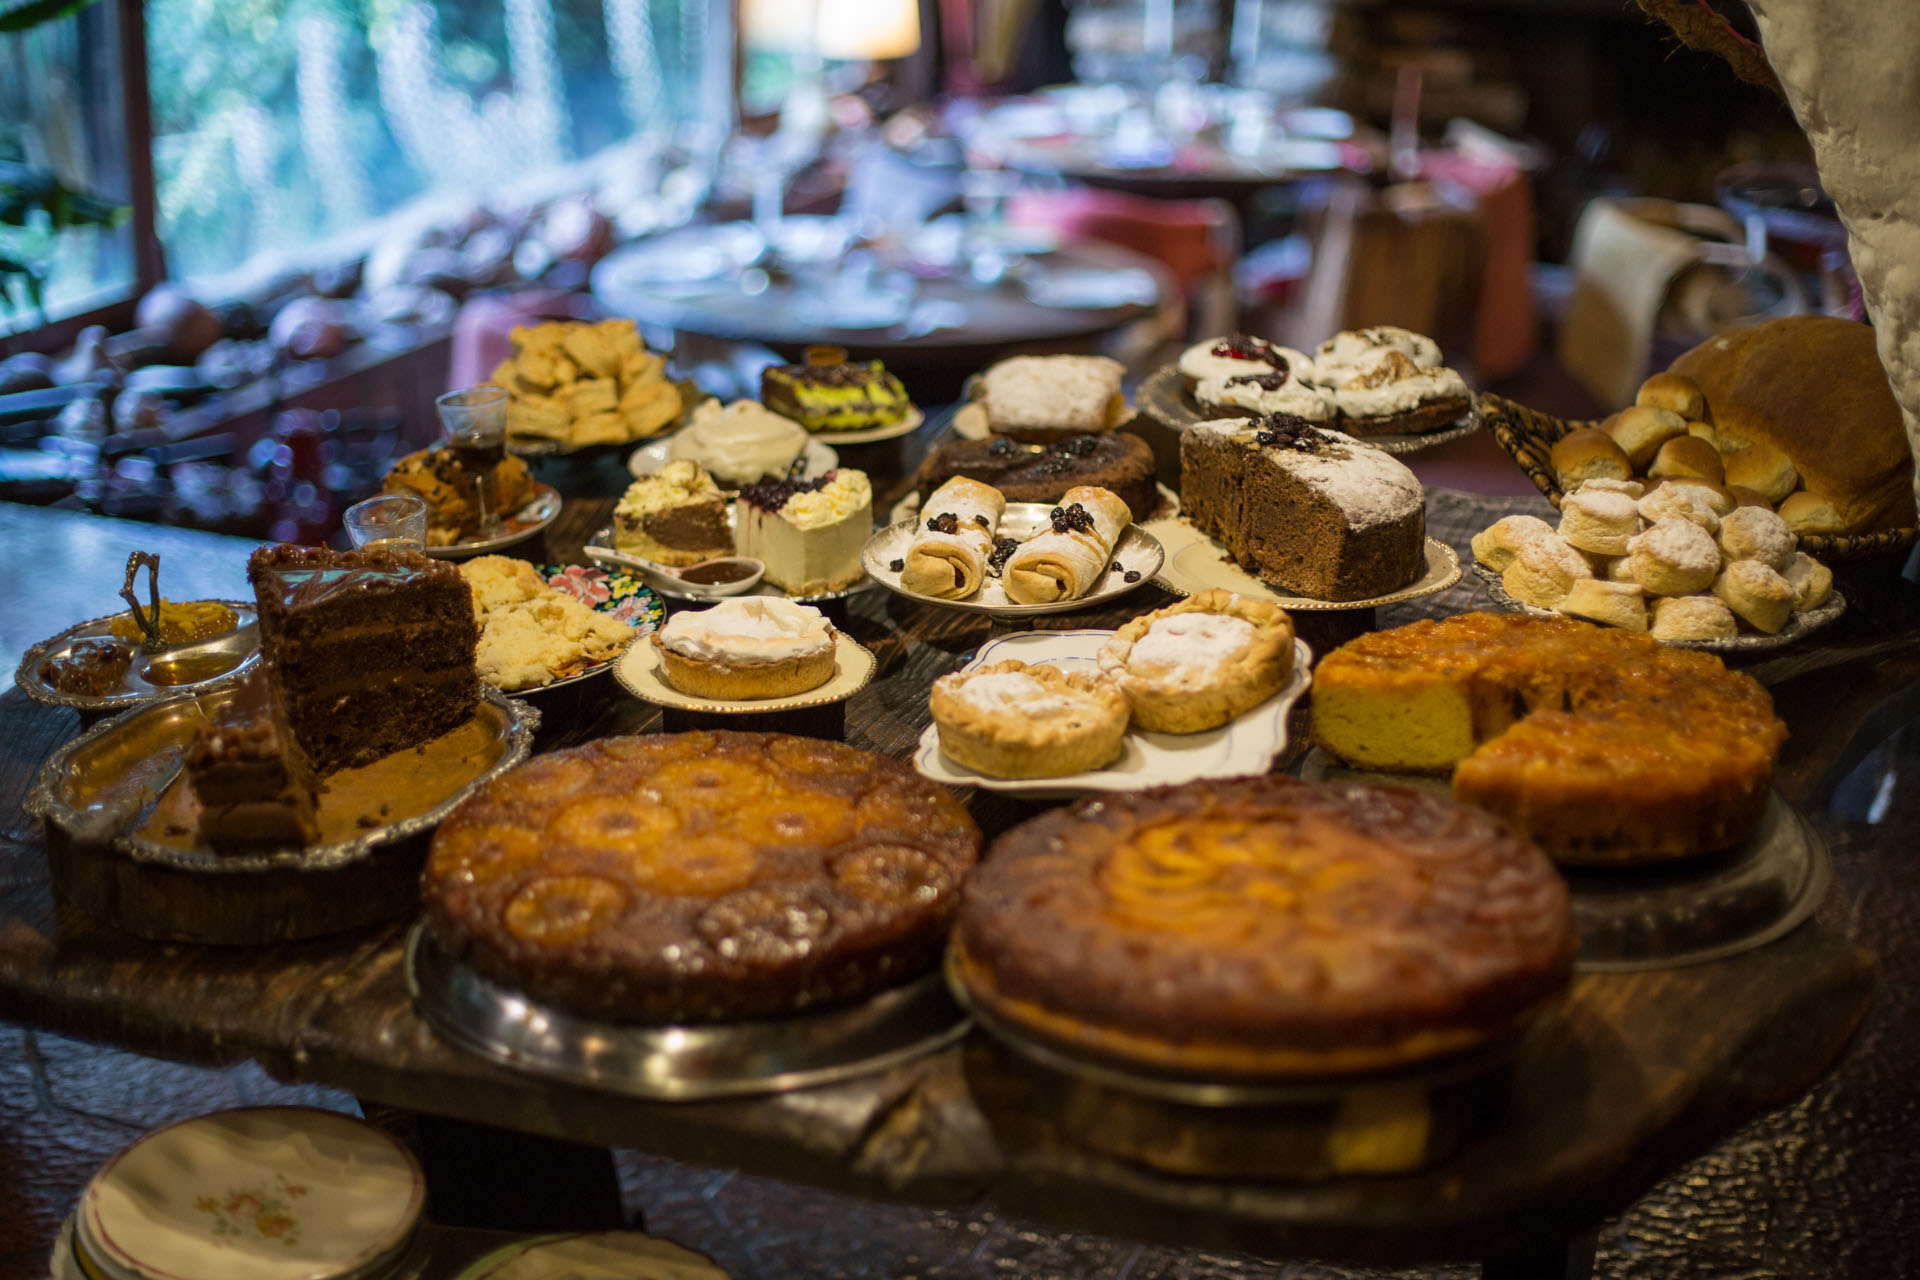 Tortas, budines, scons, la pastelería es casera